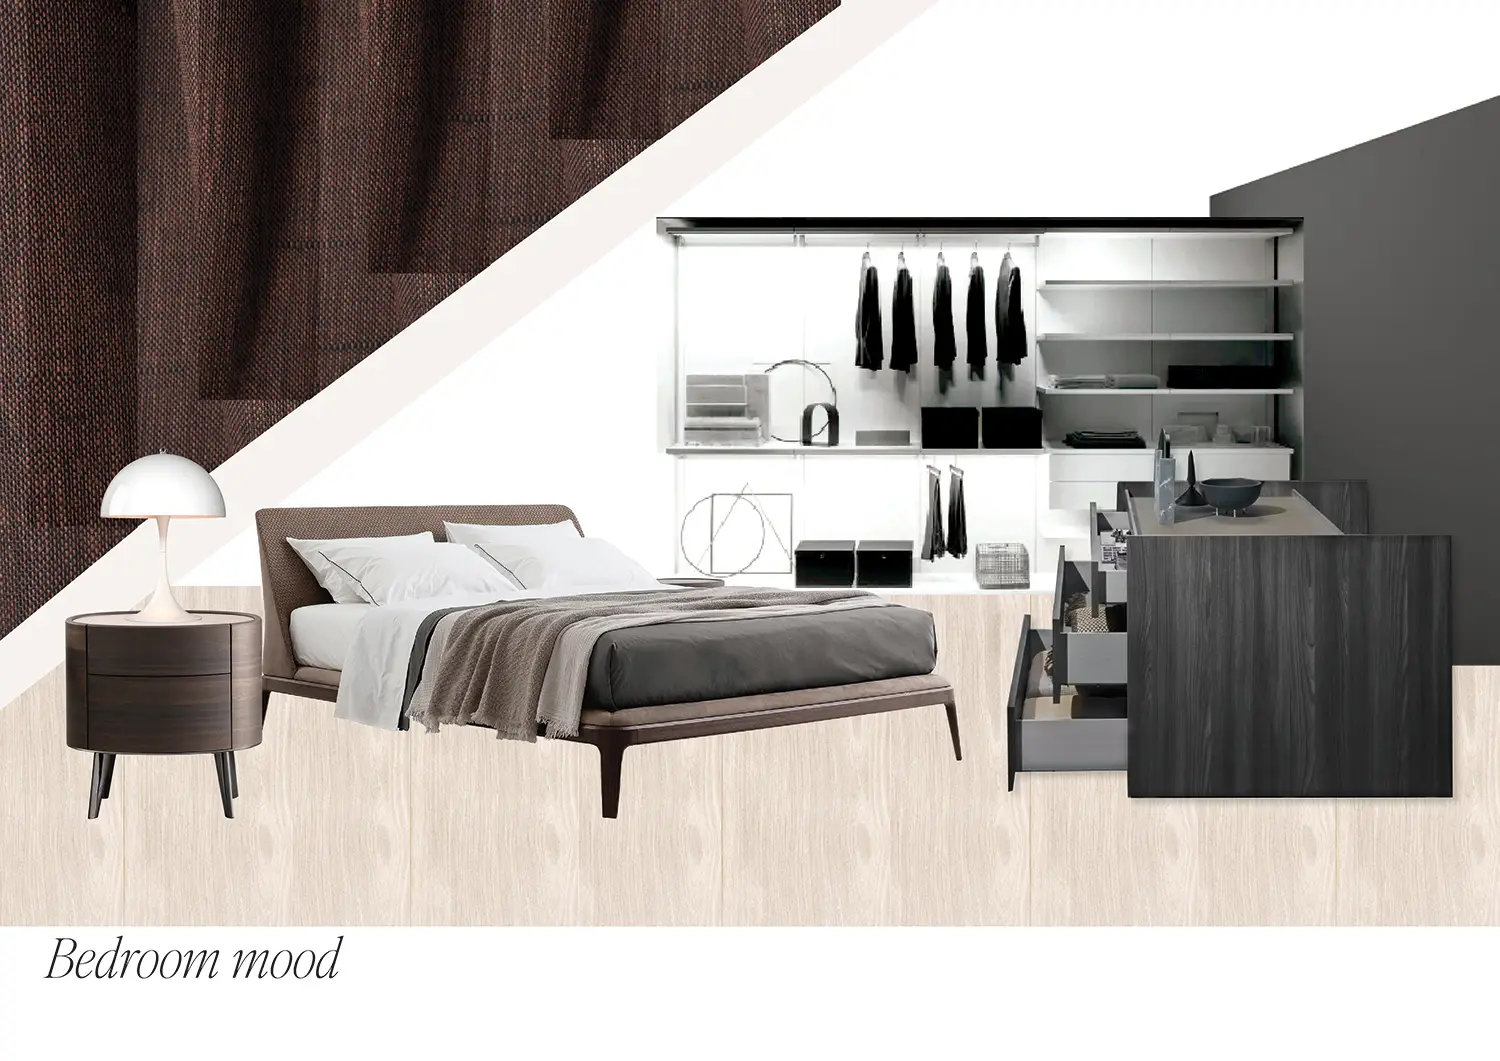 Moodboard d’ispirazione per la scelta di arredamenti e materiali con cui realizzare il progetto di ristrutturazione camera da letto e cabina armadio